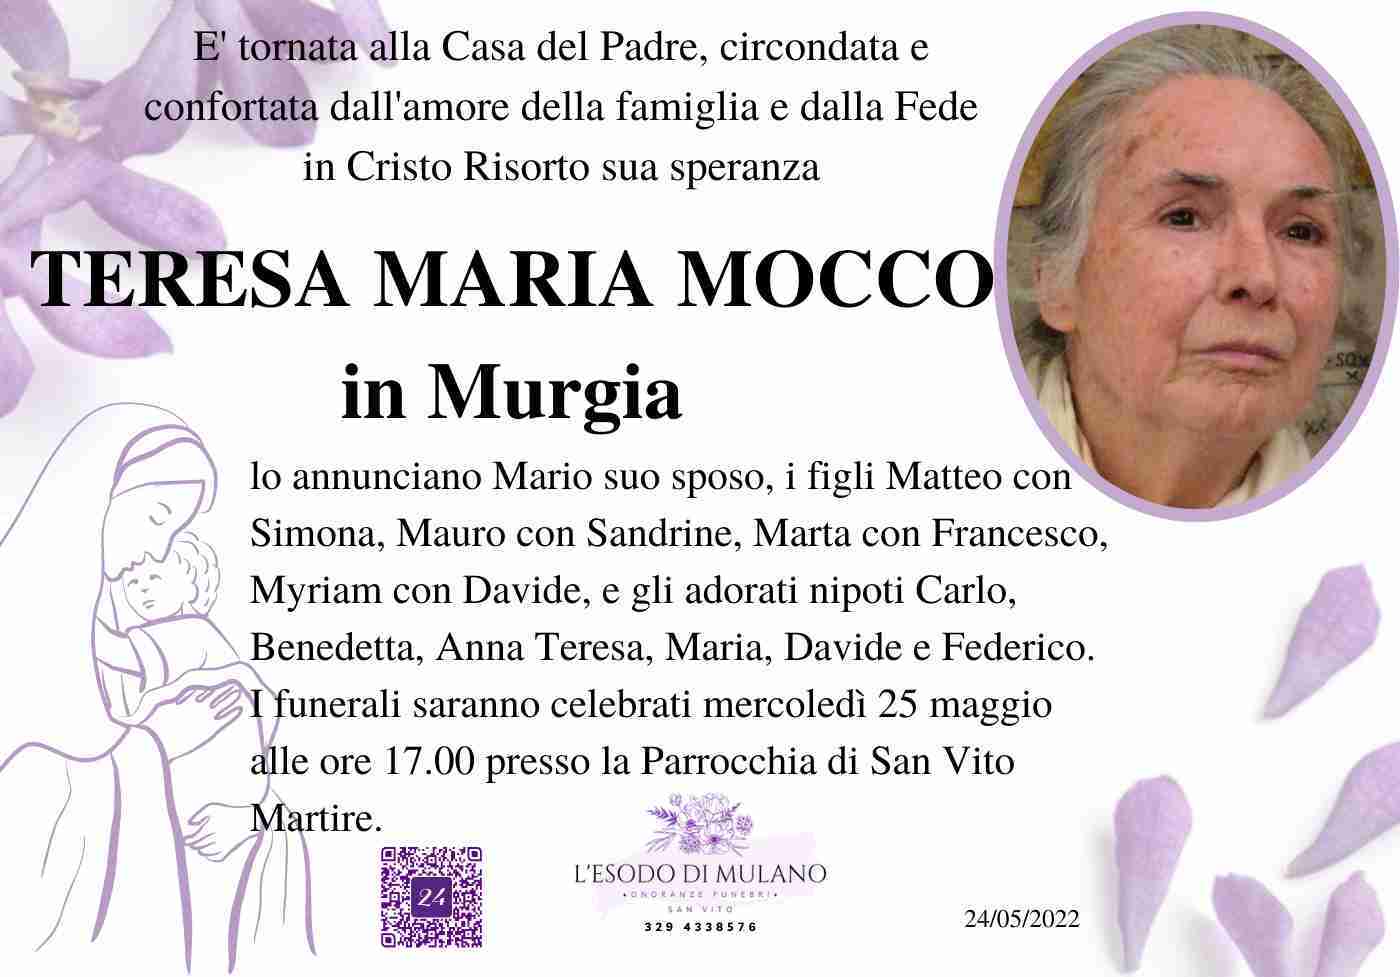 Teresa Maria Mocco